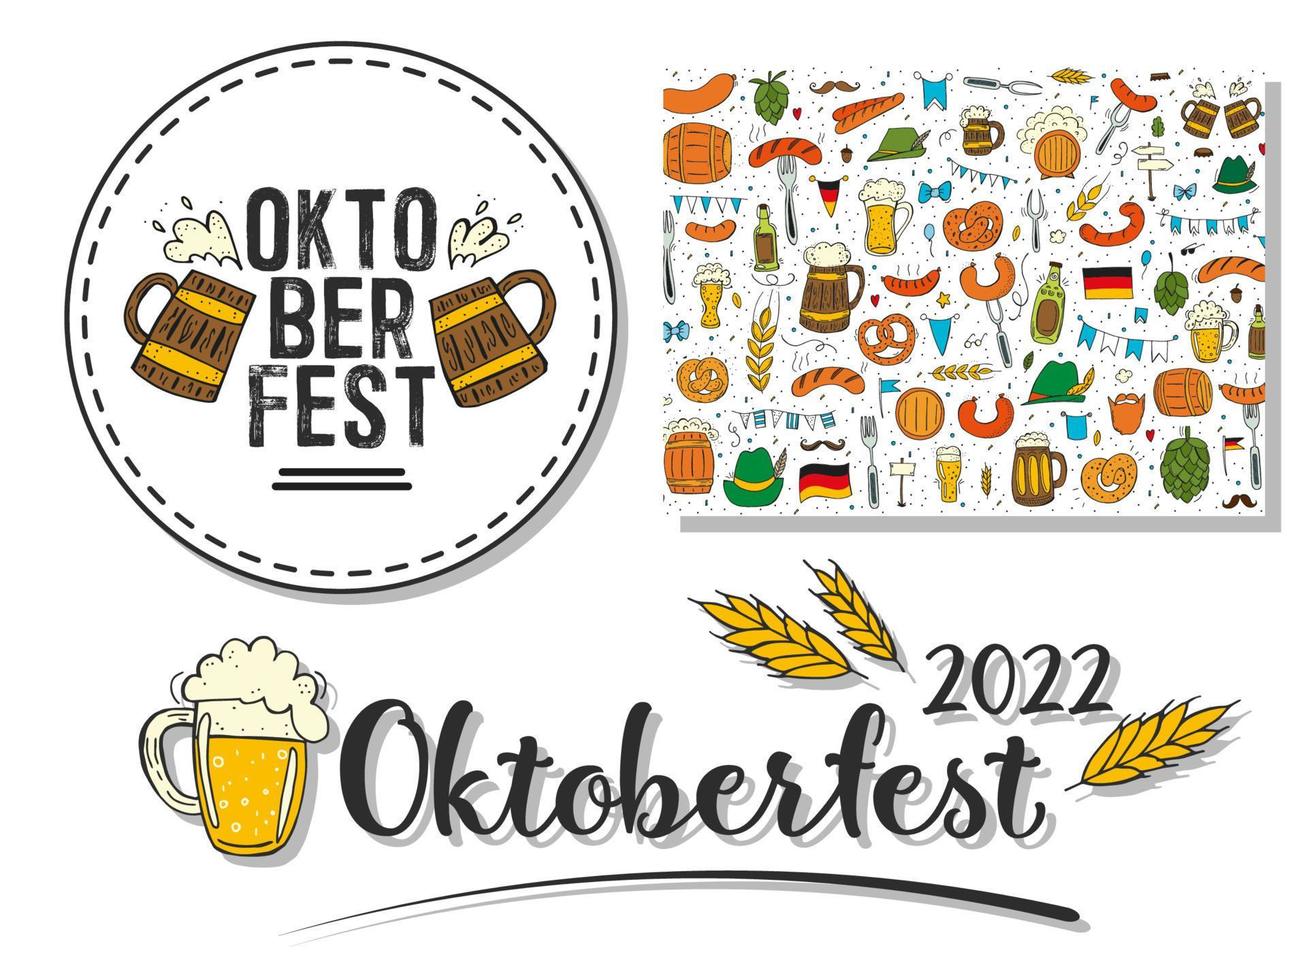 oktoberfest 2022 - festa della birra. elementi di doodle disegnati a mano. festa tradizionale tedesca. emblema rotondo con boccali di birra e testo, scritte nere con spighe di grano e un motivo di elementi colorati. vettore